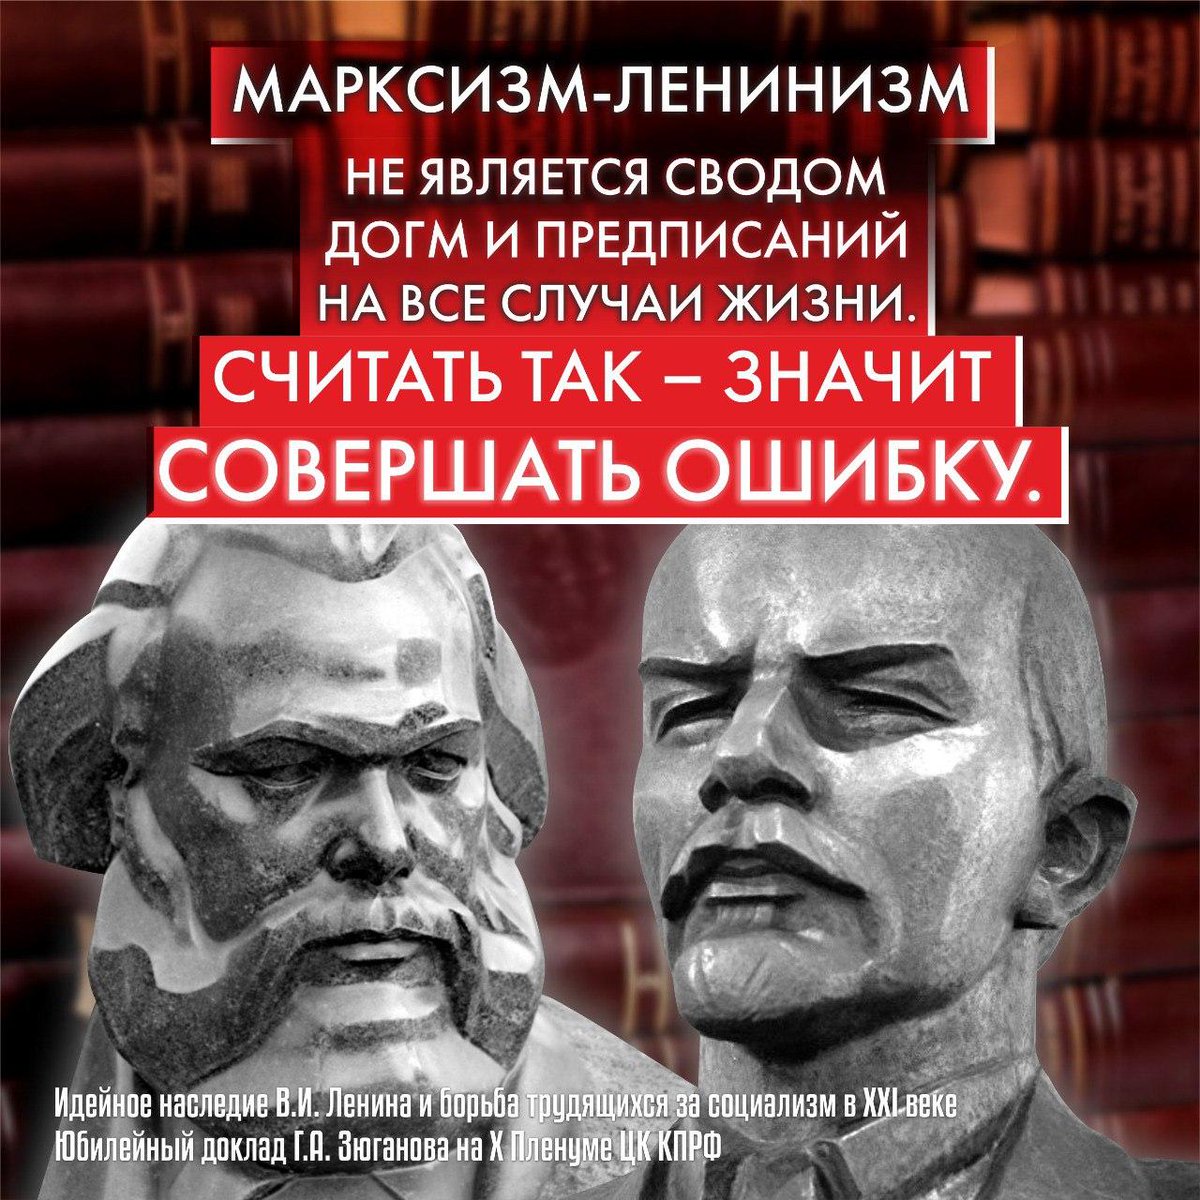 Ленинизм идеология. Марксизм-ленинизм. Марксистско-Ленинская идеология. Социализм 21 века.